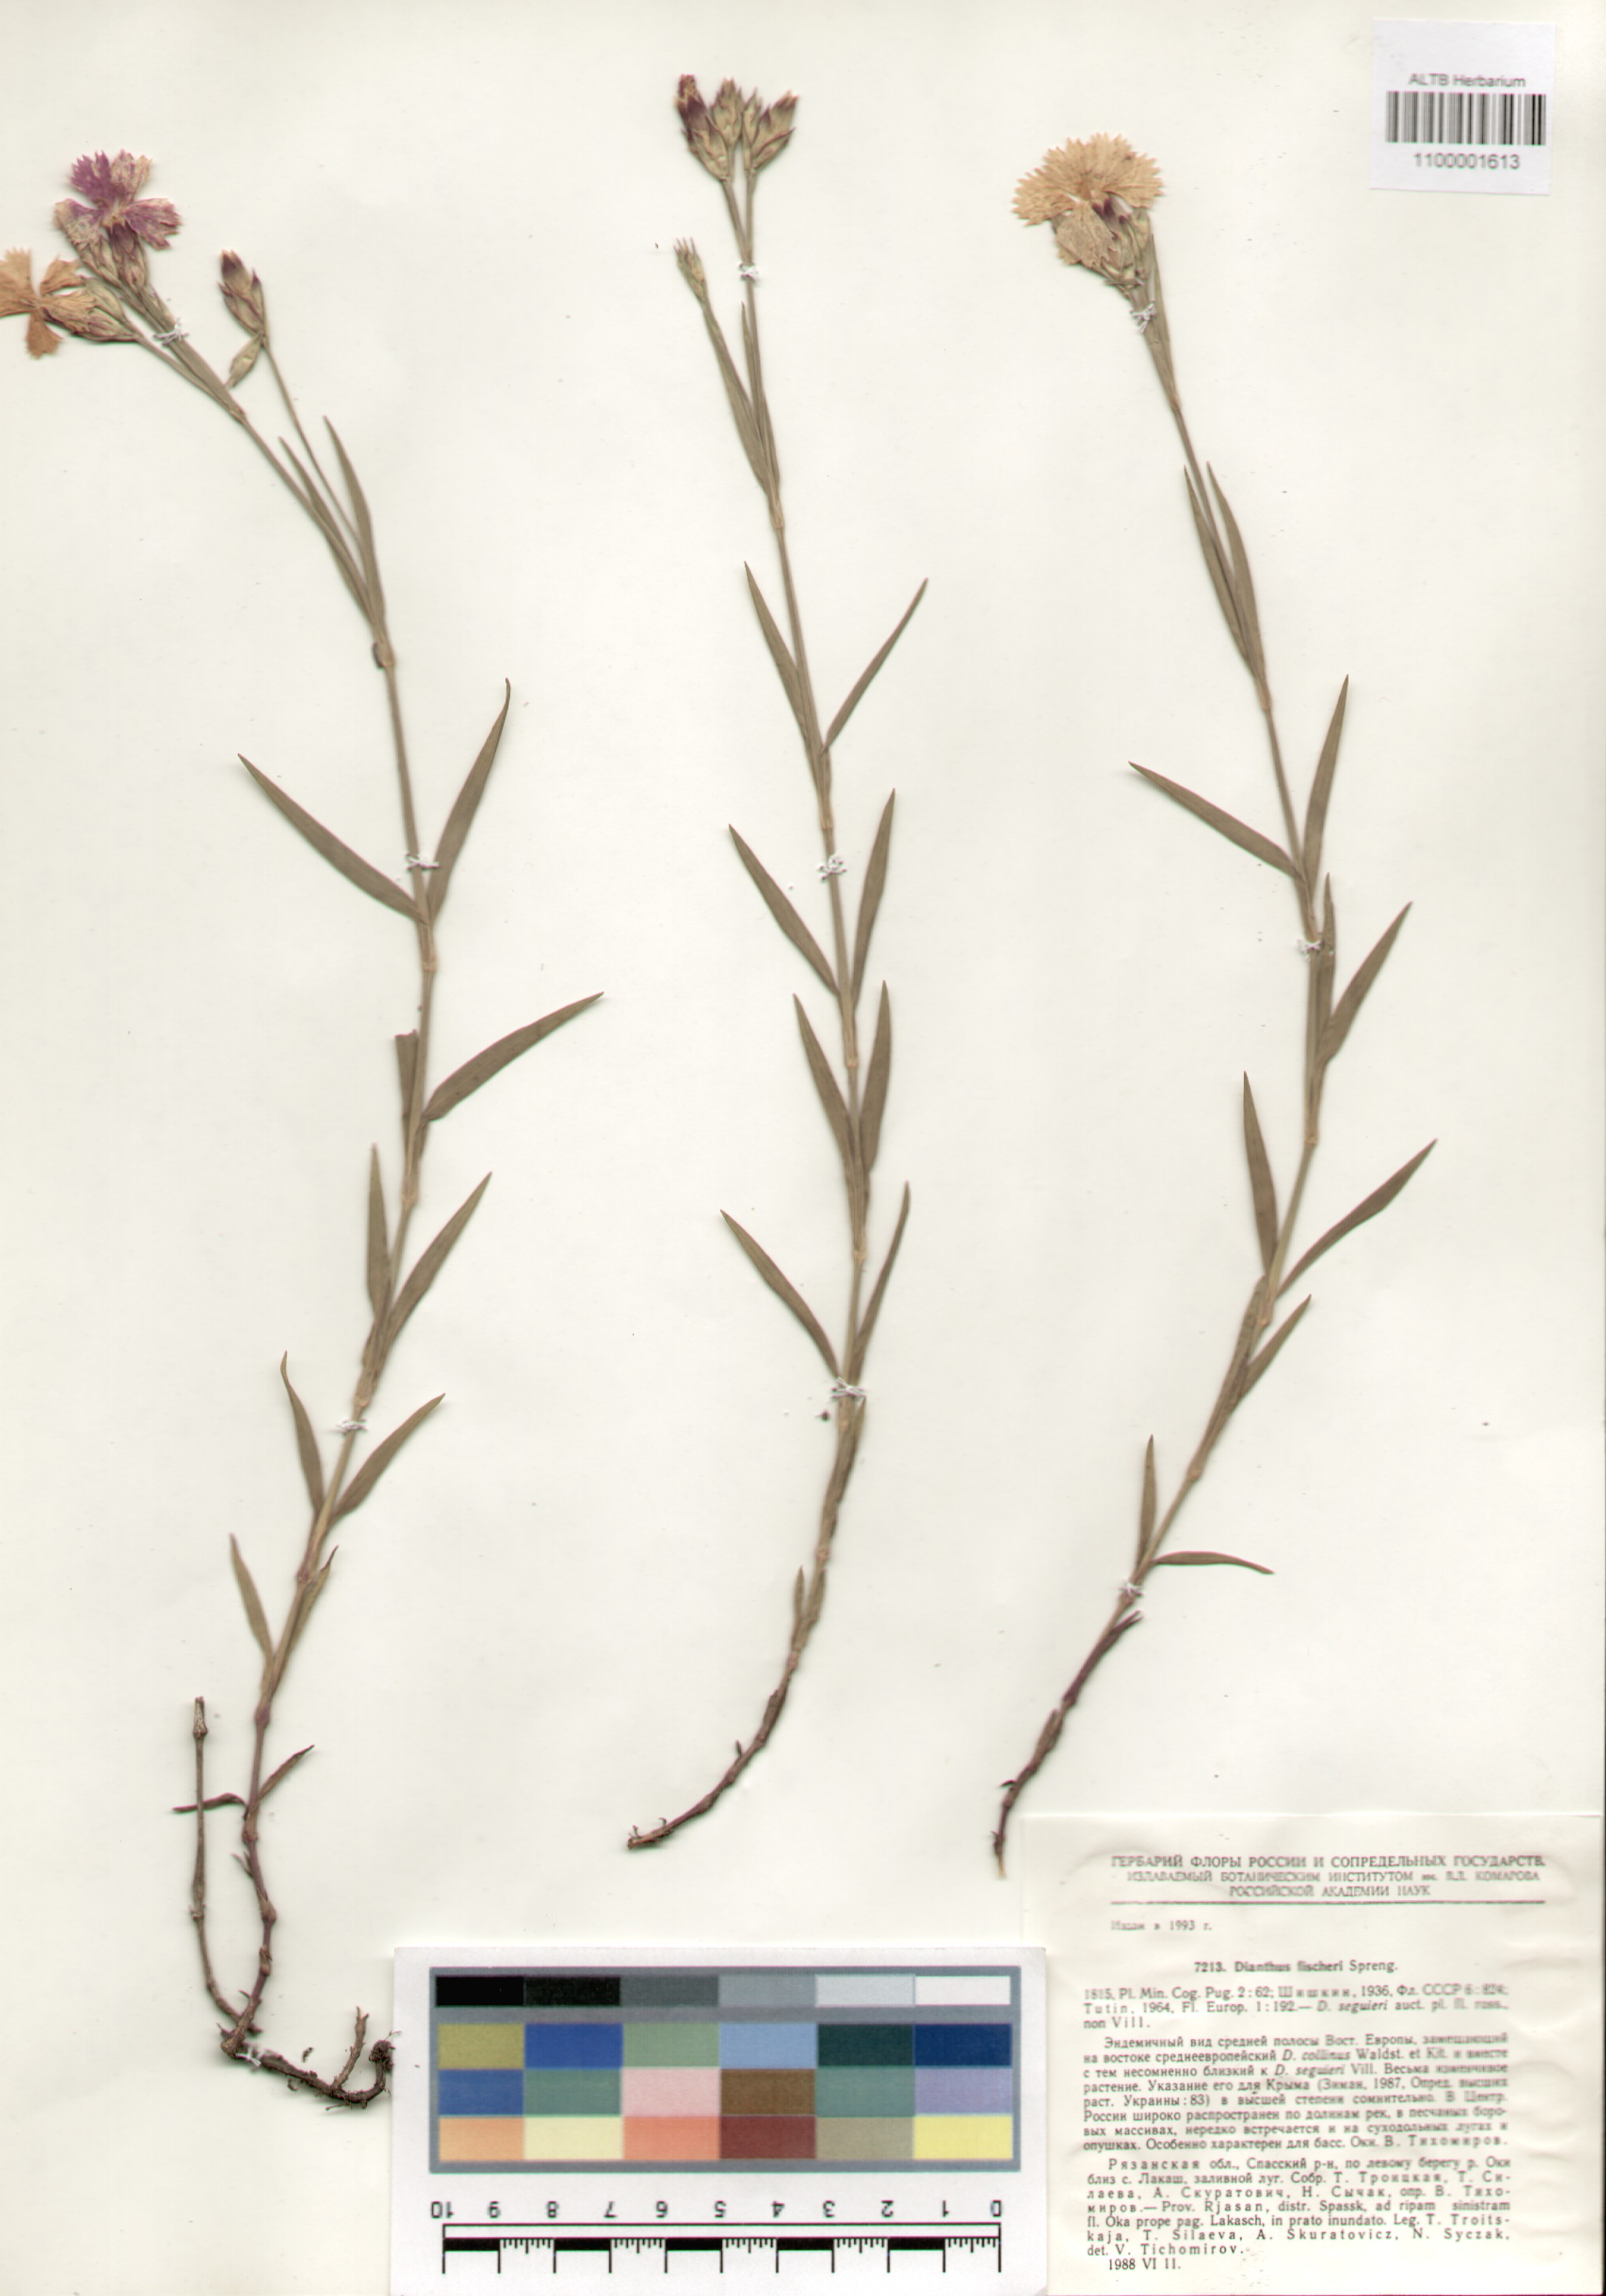 Caryophyllaceae,Dianthus fischeri Spreng.